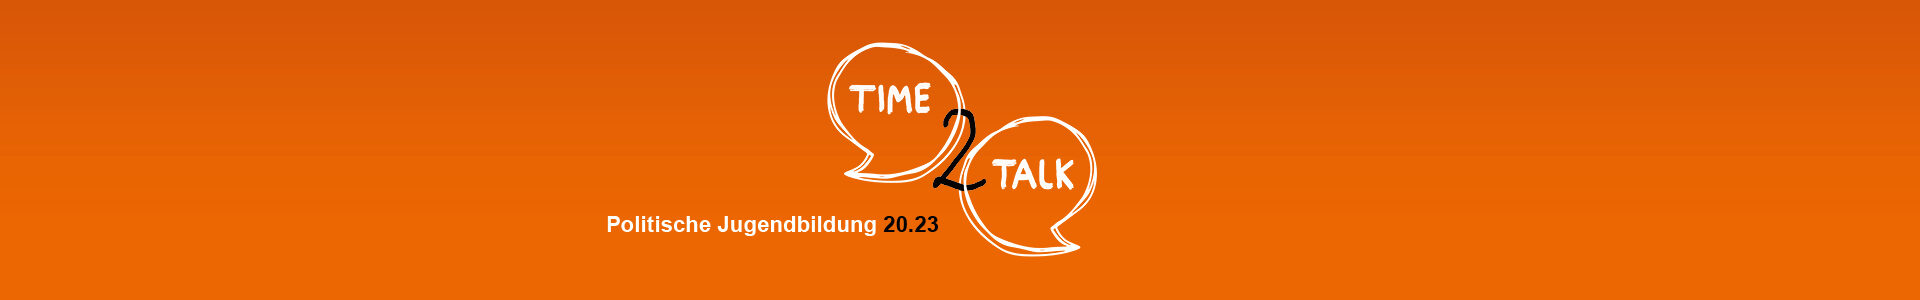 Headerbild zur Webtalk-Reihe „Time2Talk - Politische Jugendbildung 20.23”